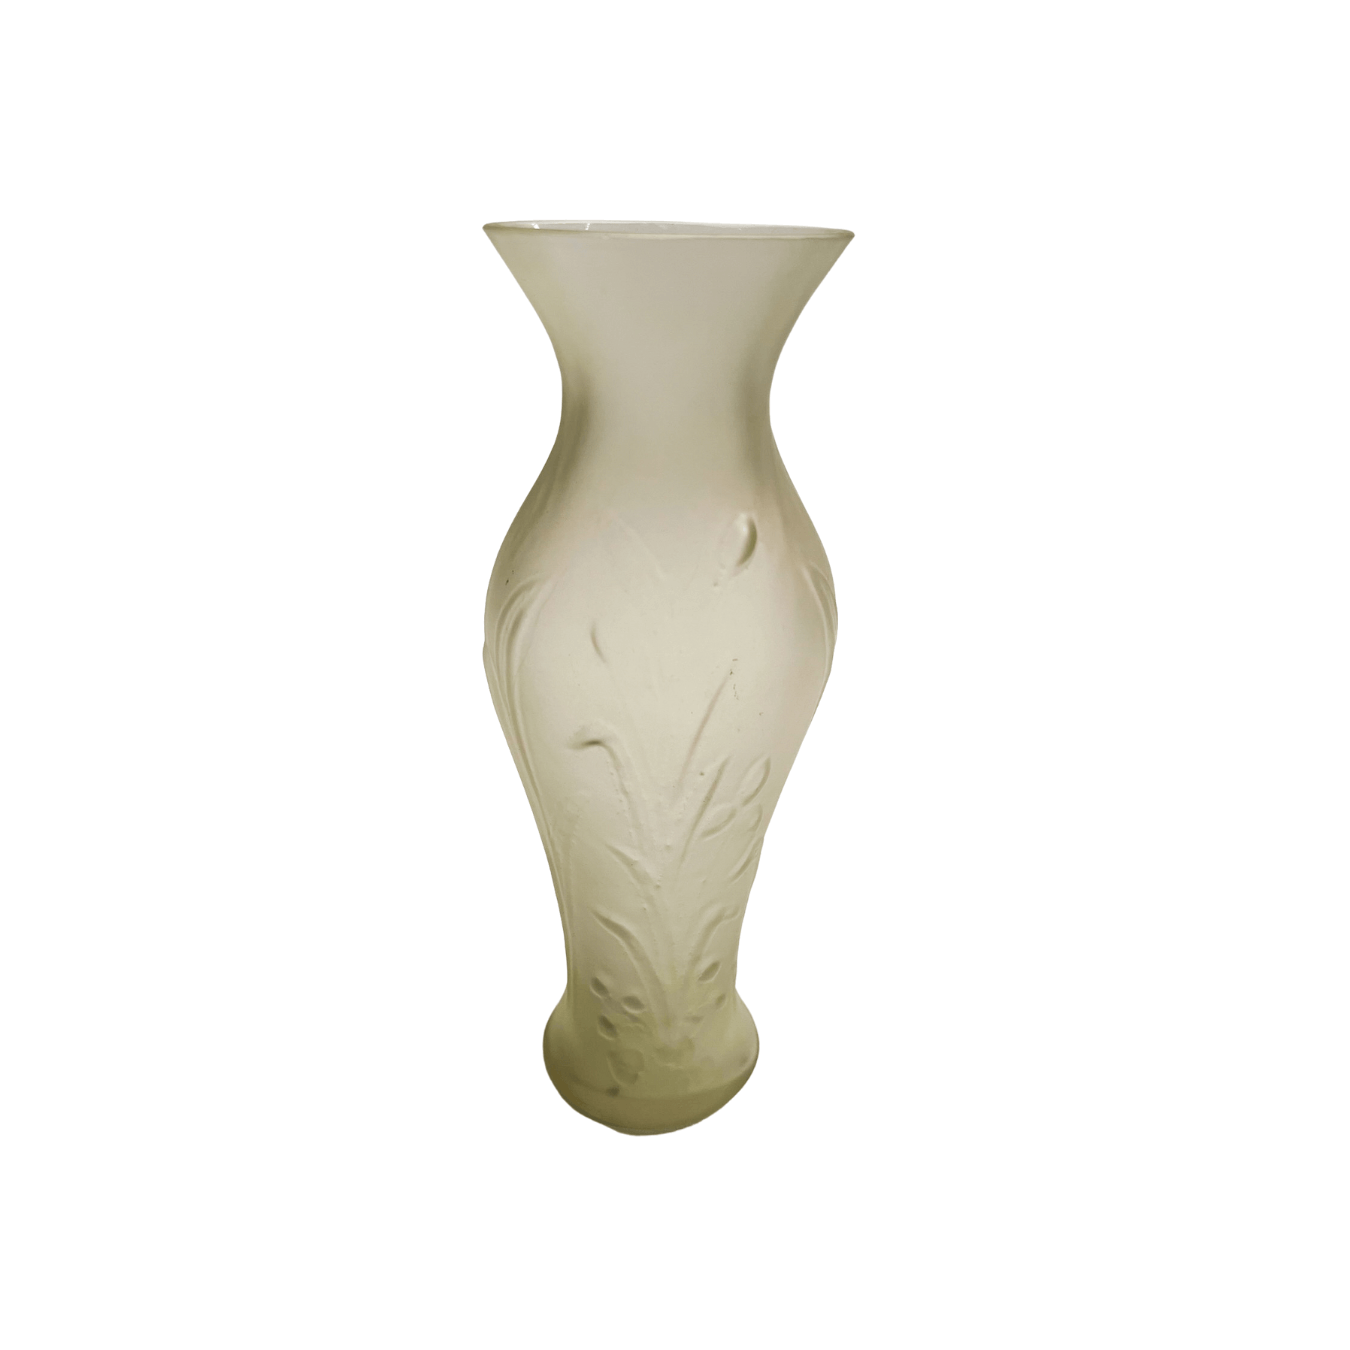 Vaso Art Nouveau dos anos 1920